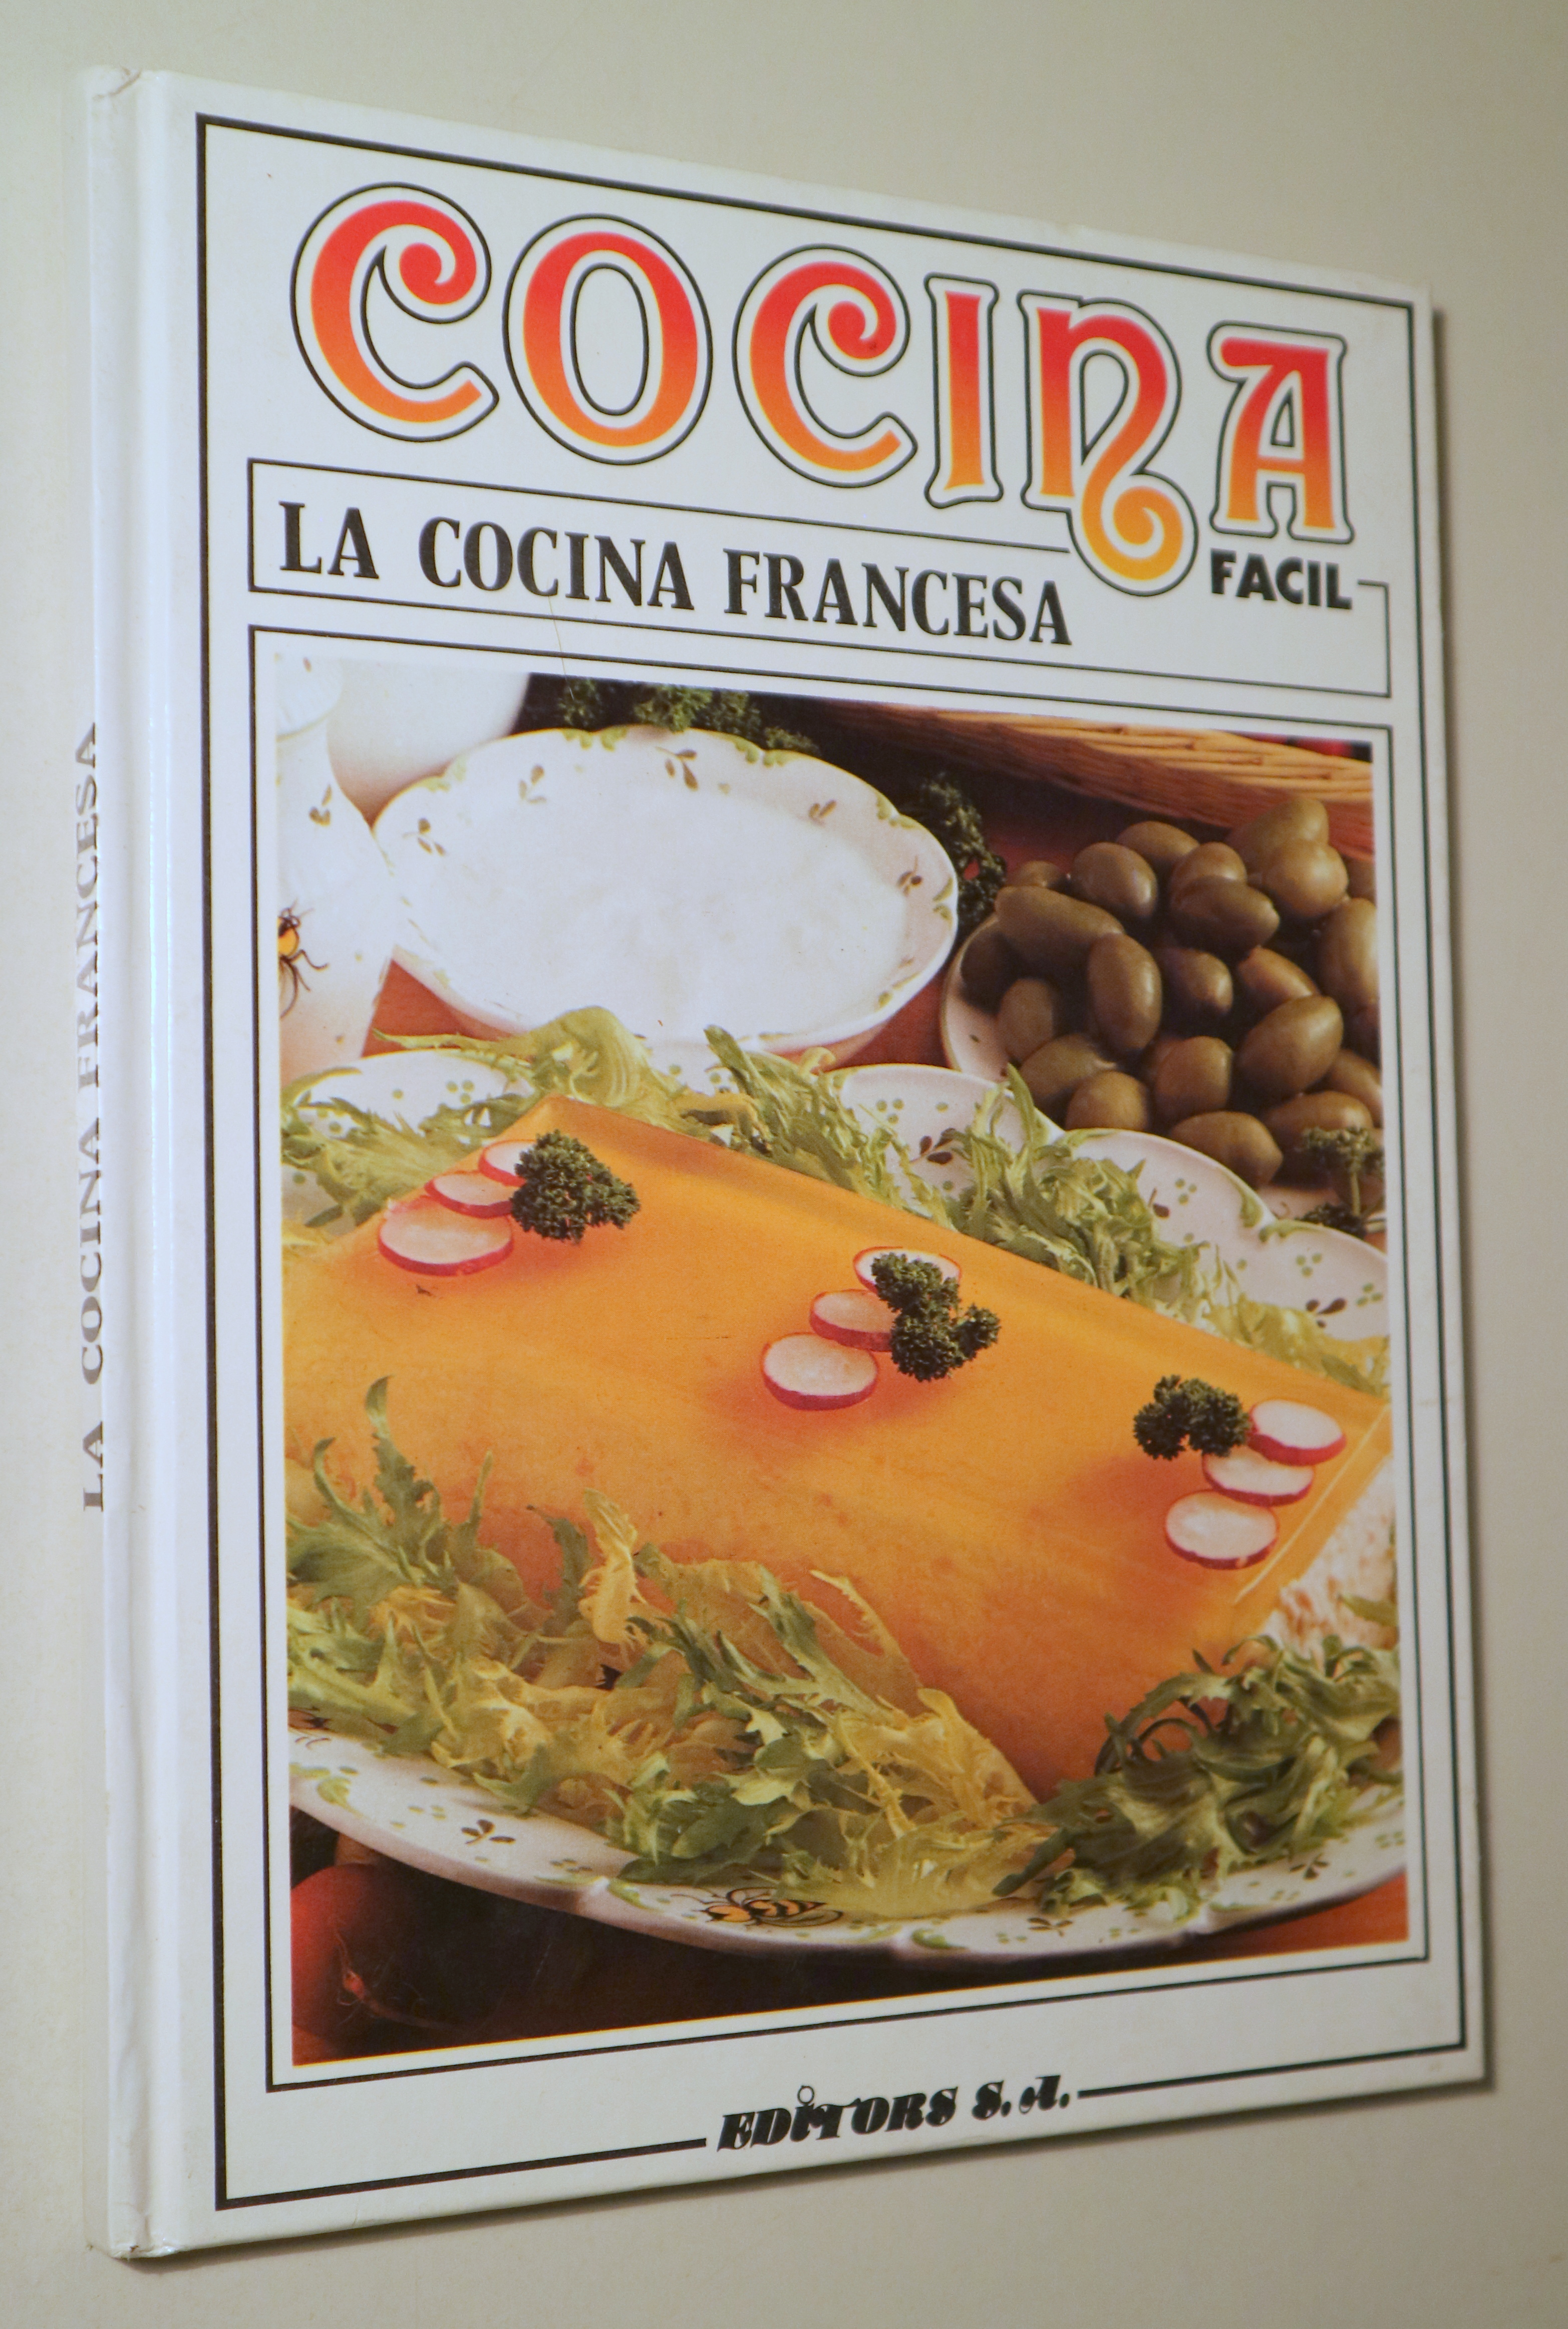 COCINA FÁCIL. La cocina francesa - Barcelona 1985 - Ilustrado